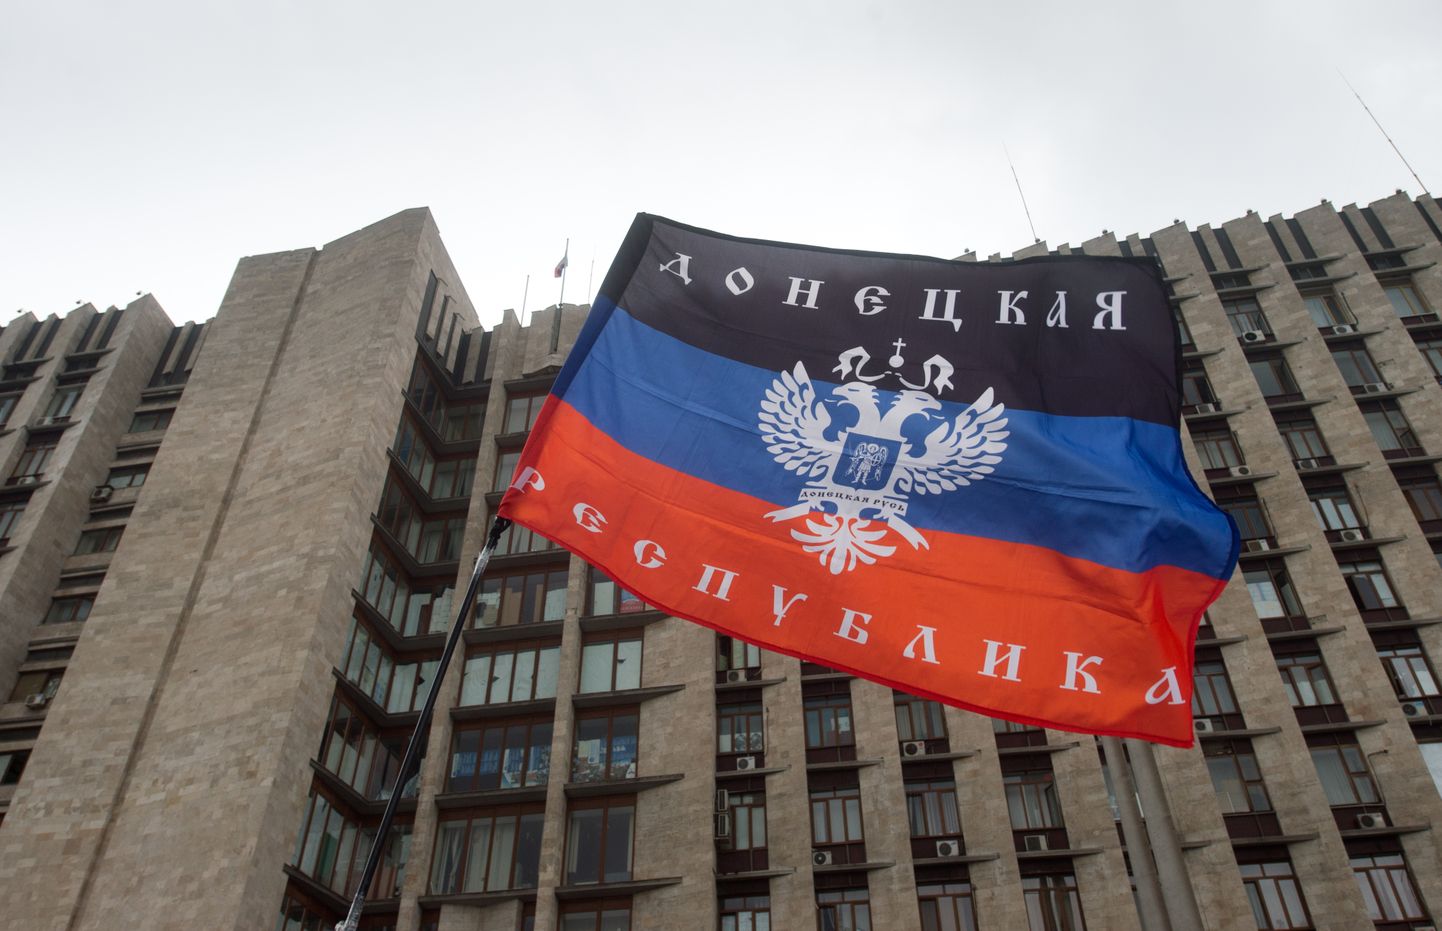 Isehakanud Donetski rahvavabariigi lipp oblastivalitsuses asuva peakorteri ees.